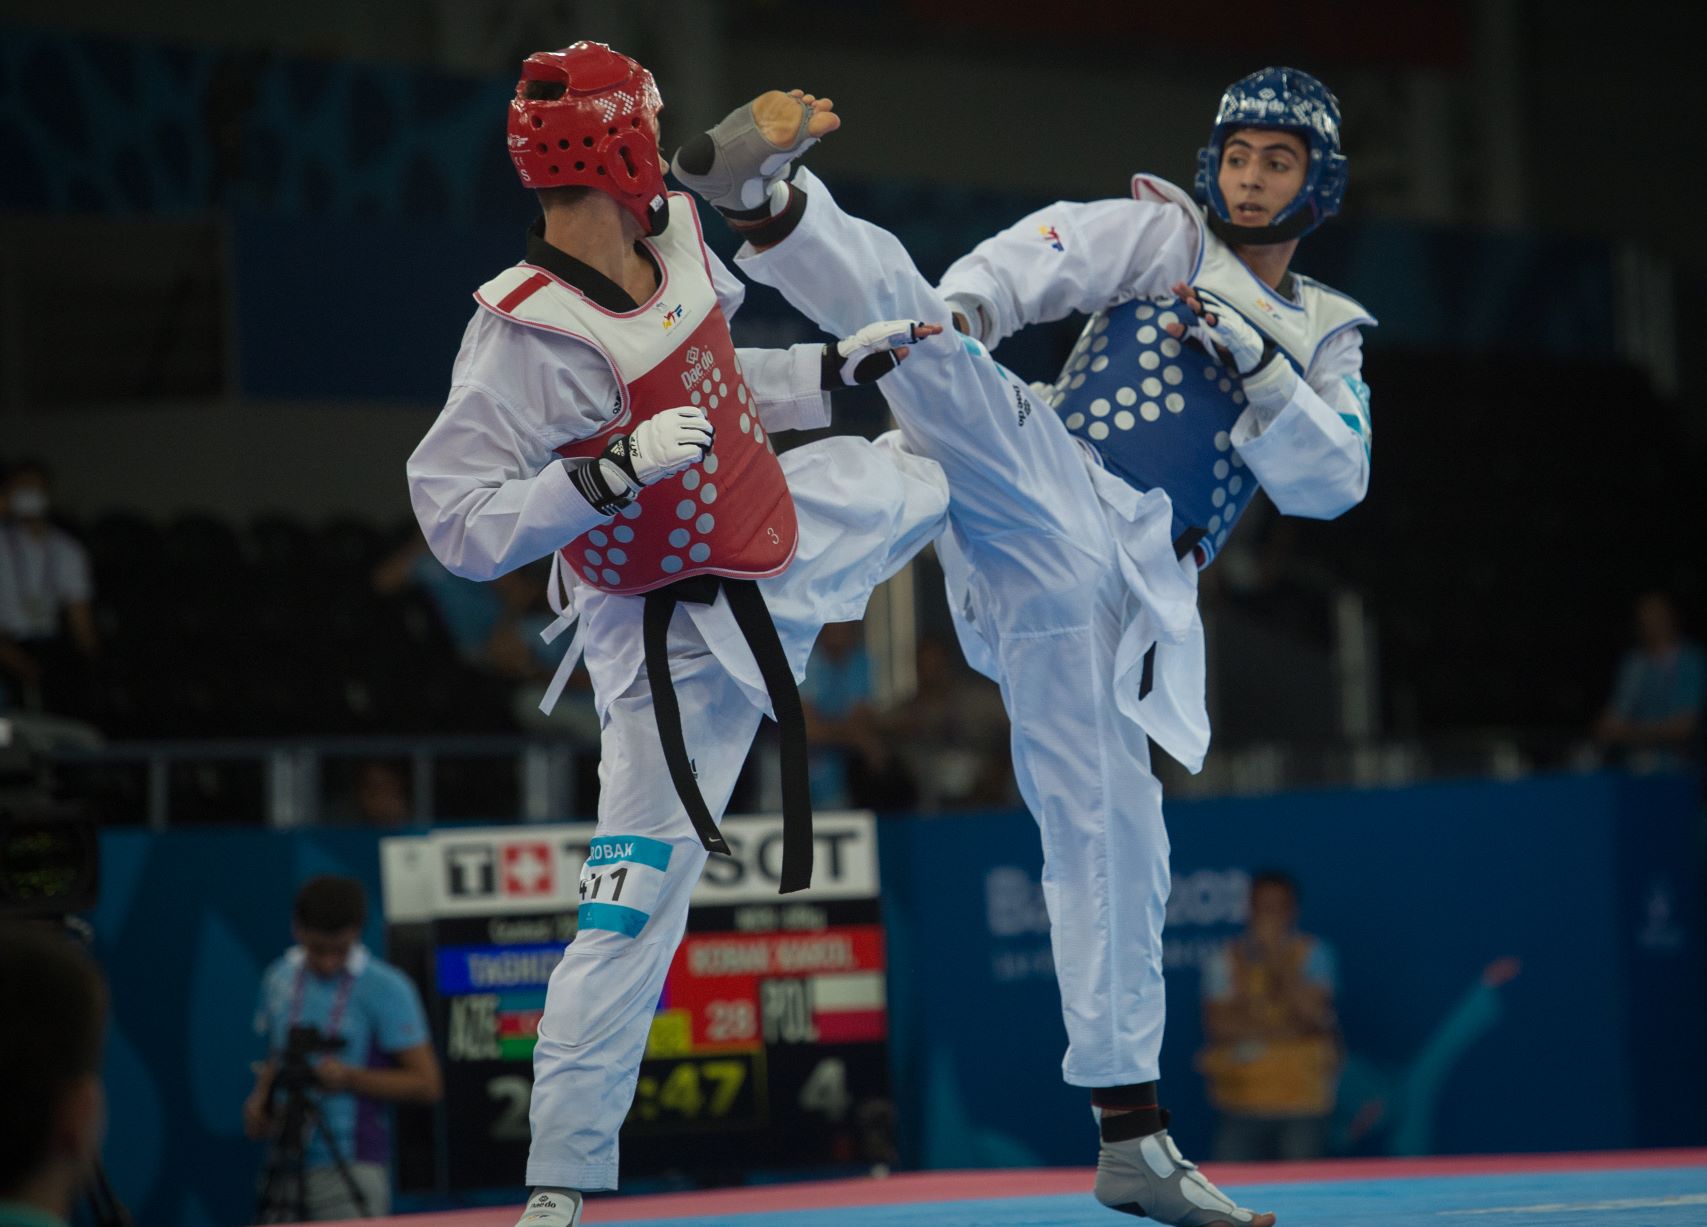 Igrzyska Europejskie w Krynicy. “To najważniejsza impreza w historii polskiego taekwondo”